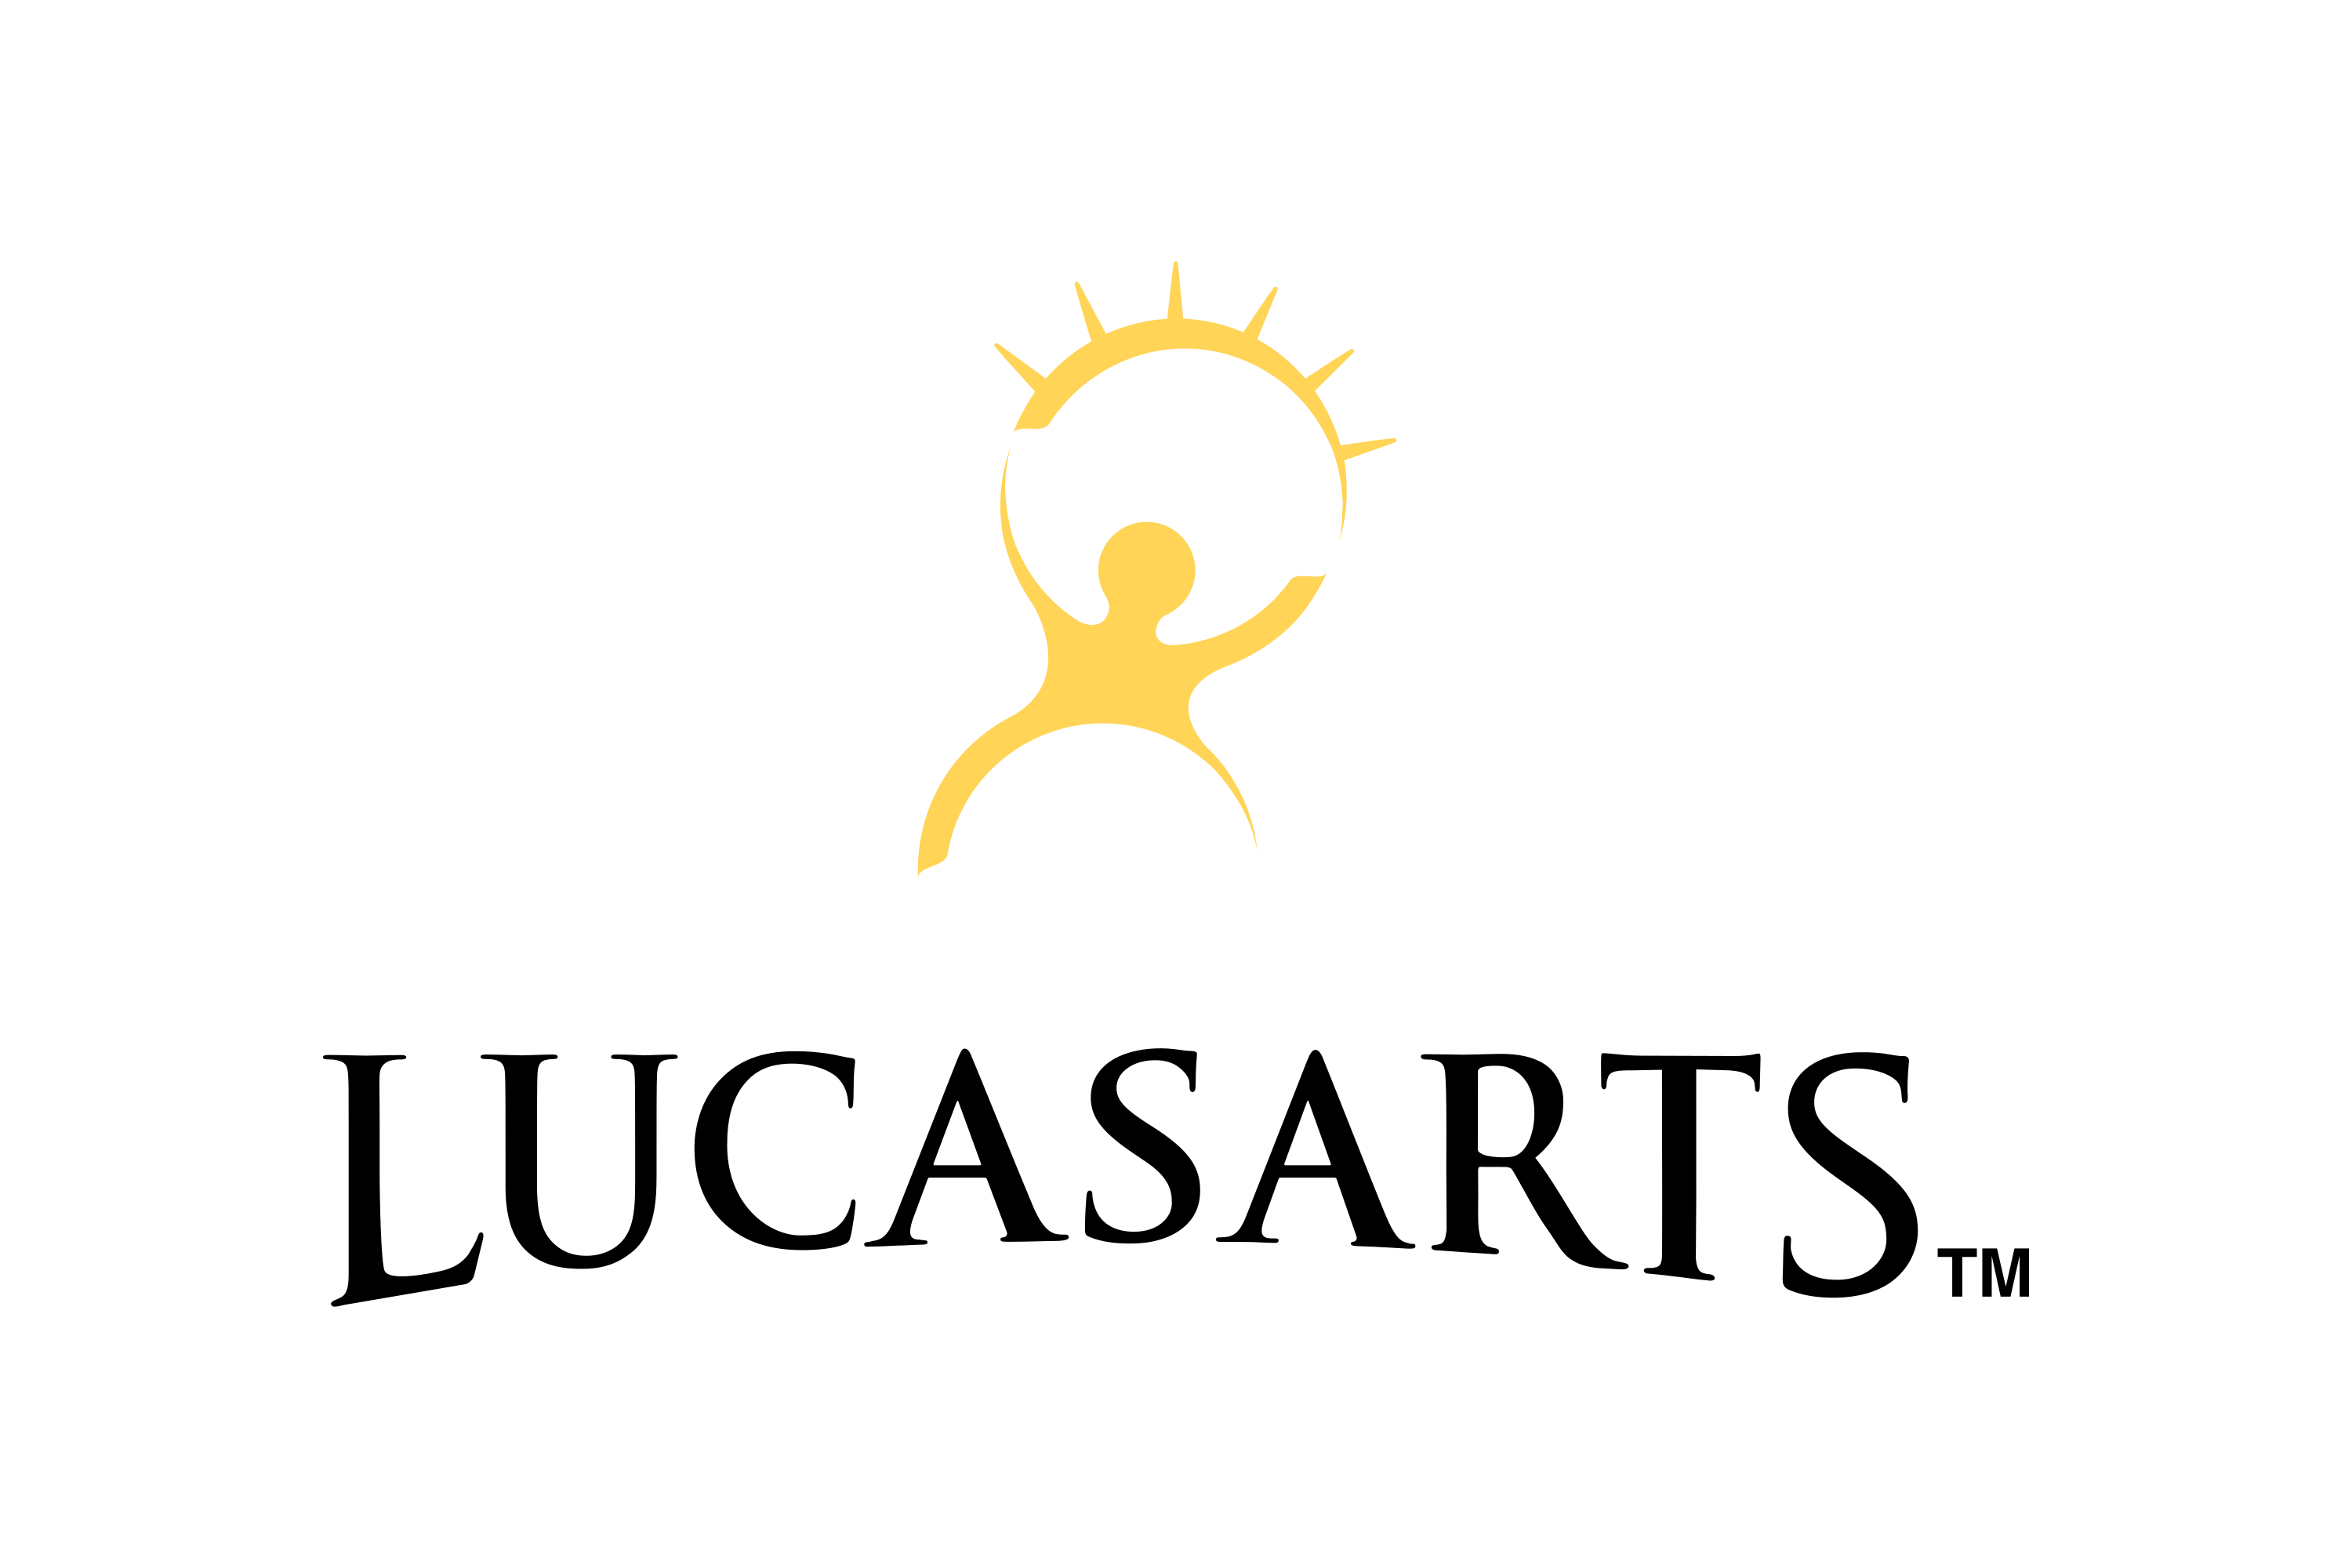 Download Lucasarts Lucasfilm Games Logo In Svg Vector Or Png File Format Logo Wine